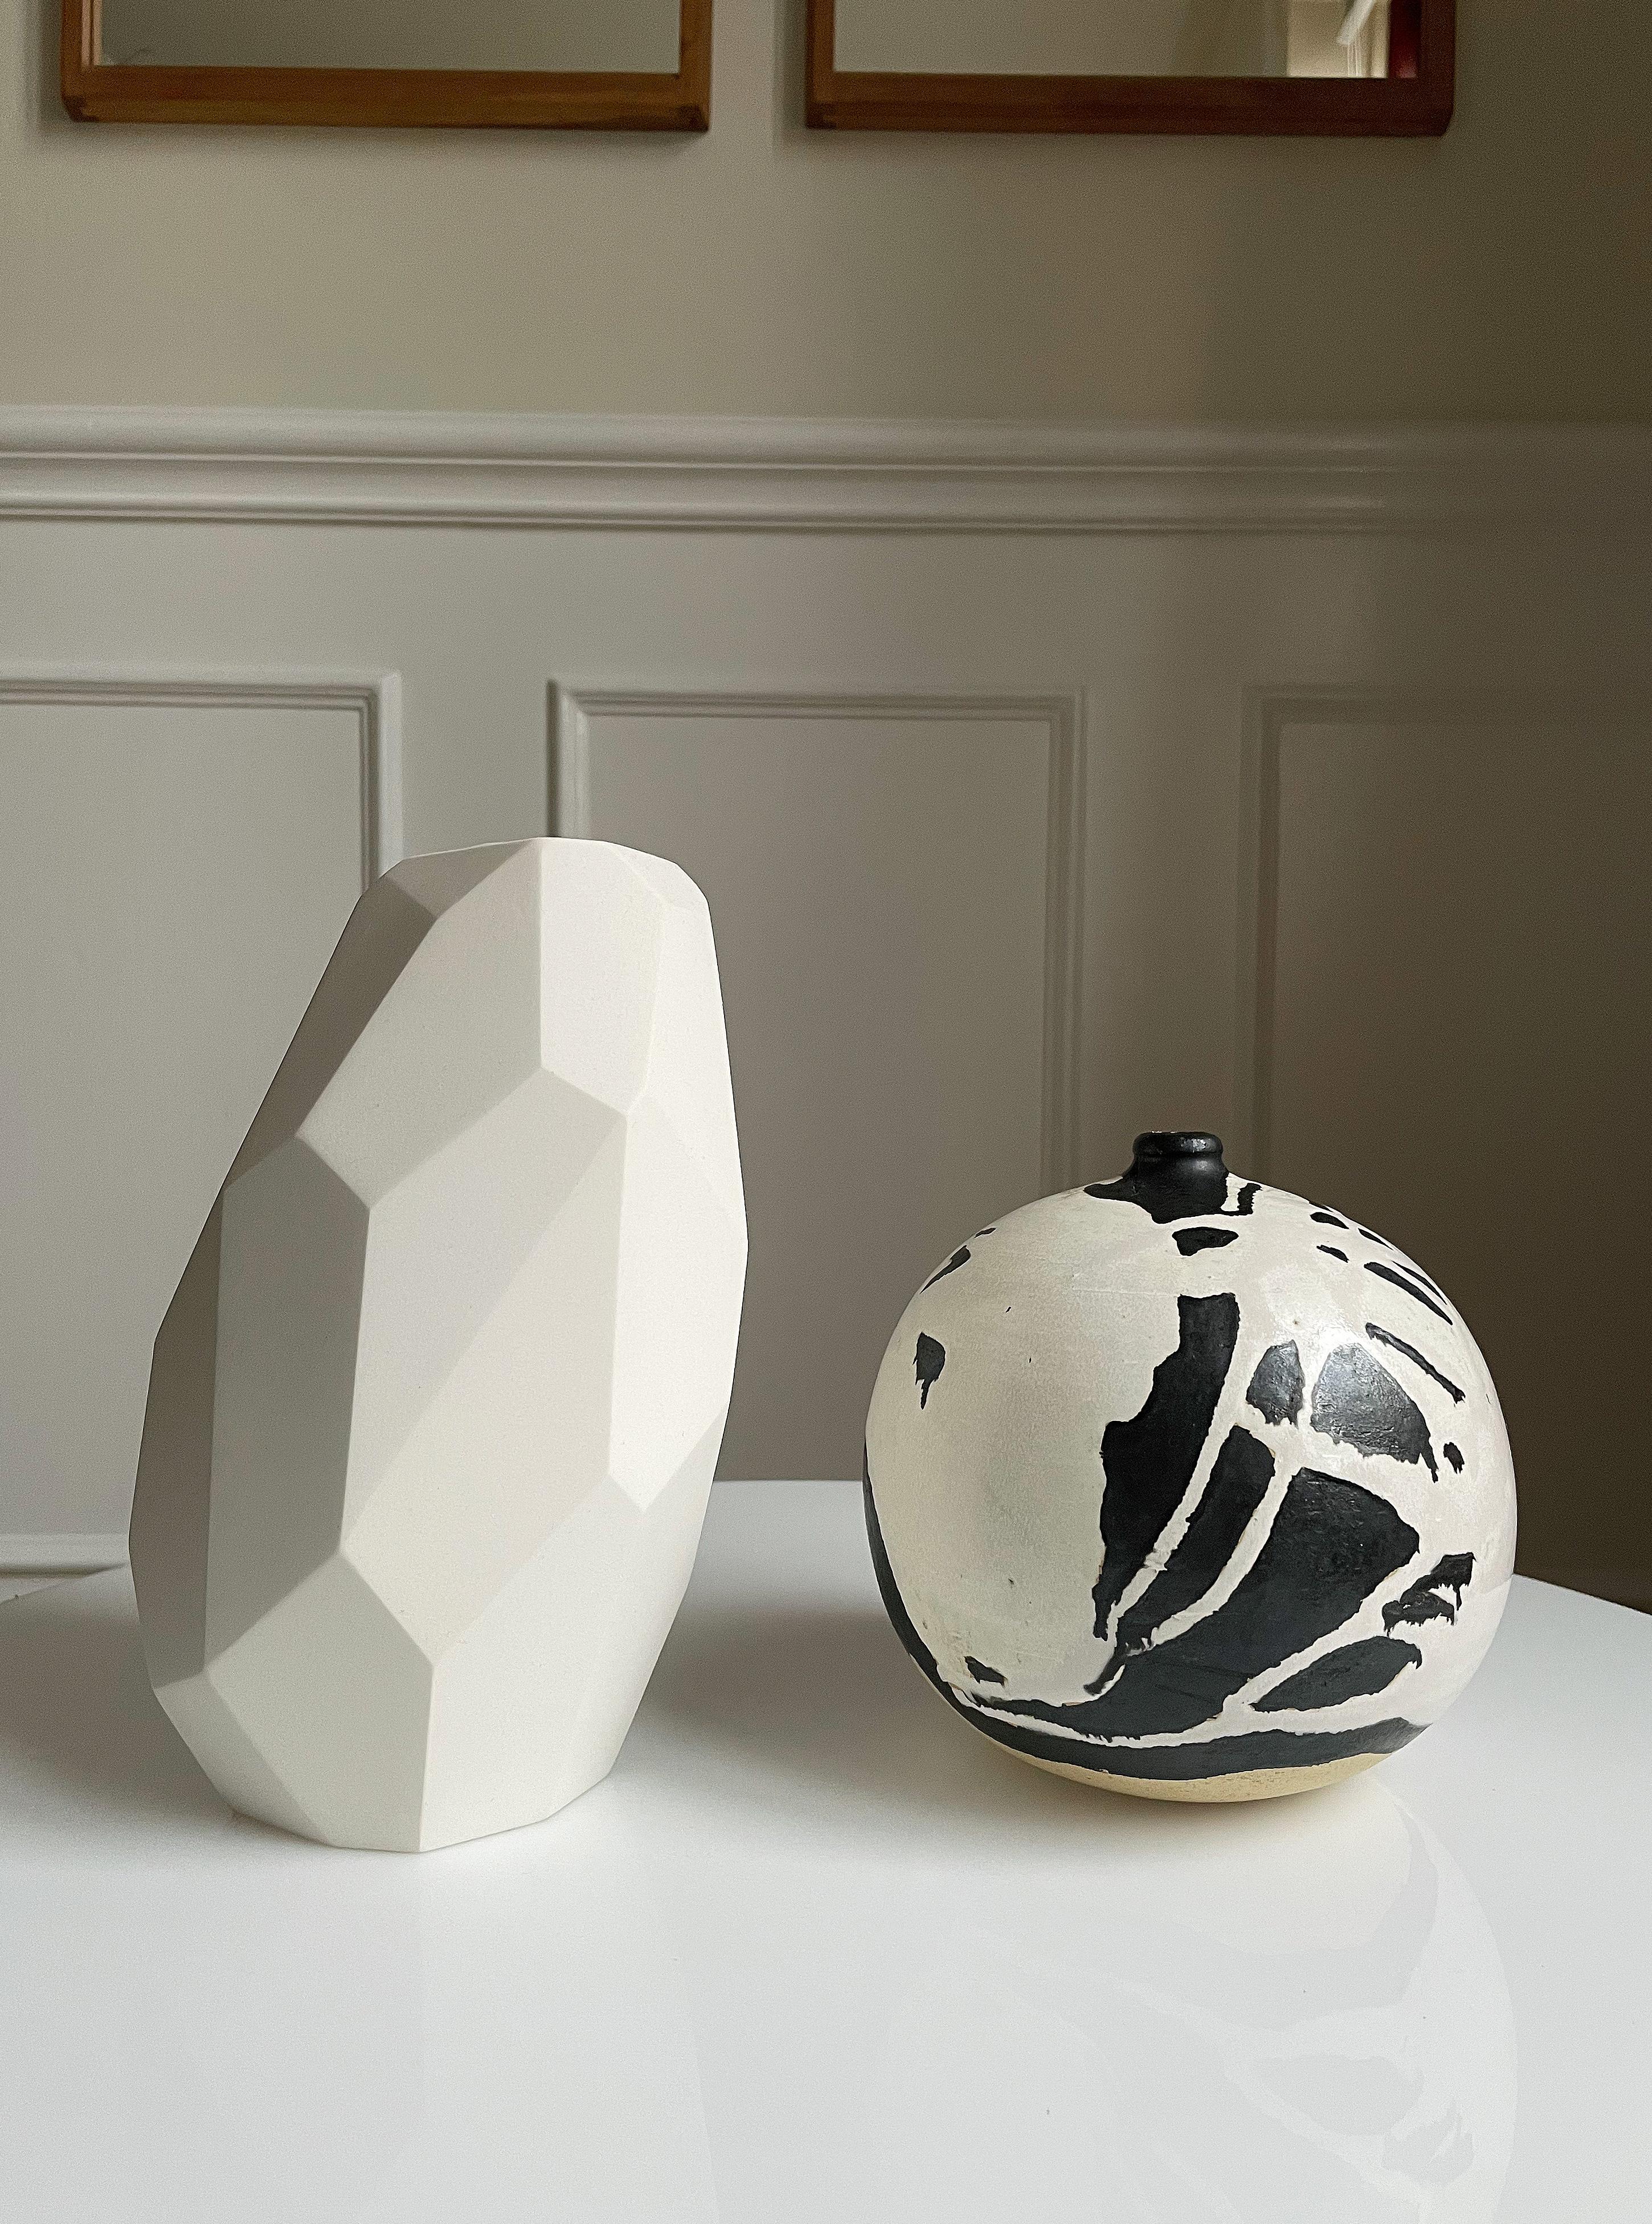 Skulpturale Vase aus weißer Keramik in limitierter Auflage von der dänischen Keramikkünstlerin Anne Jørgensen für AJ Ceramics. Das skulpturale, schräge Design besteht aus mehreren scharfen Winkeln und unterschiedlich großen Flächen von oben bis